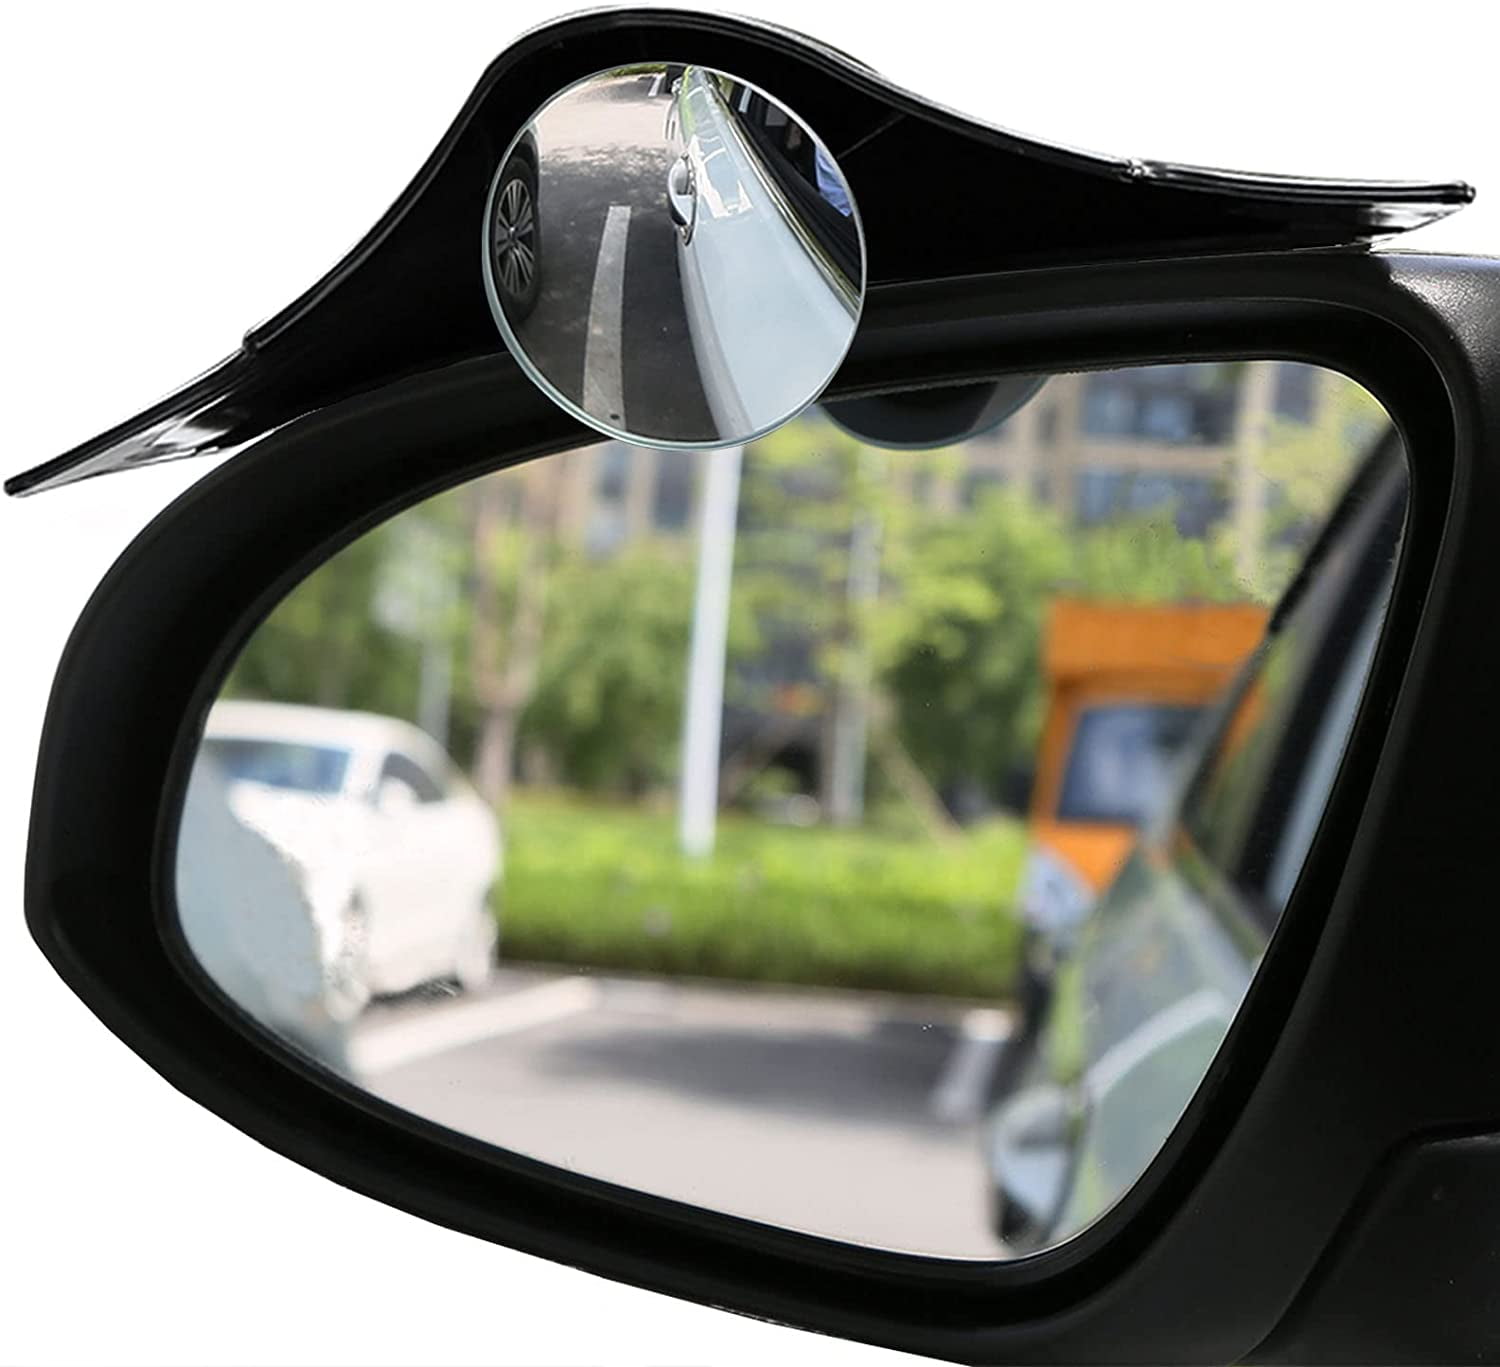 2Pcs Car Rear View Mirror Rain Visor Guard, Carbon Fiber Car Side Mirror  Rain Eyebrow Guard, Auto Mirror Rain Visor, Car Exterior Trim Accessories